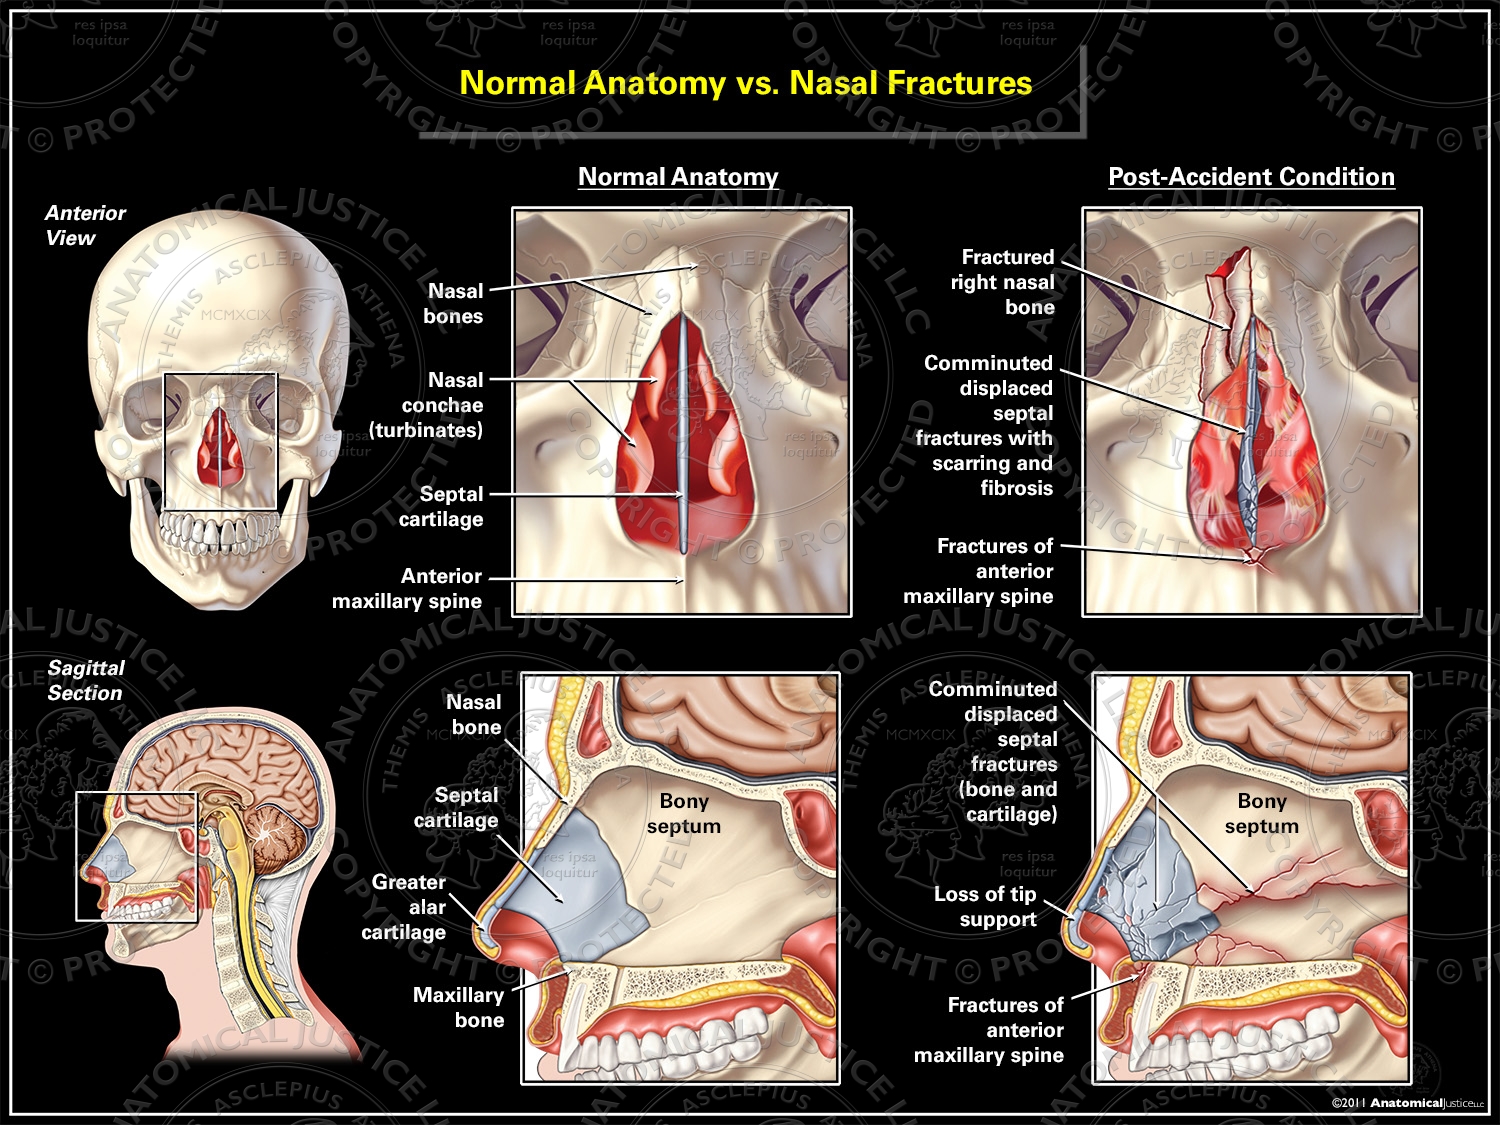 Normal Anatomy vs. Nasal Fractures